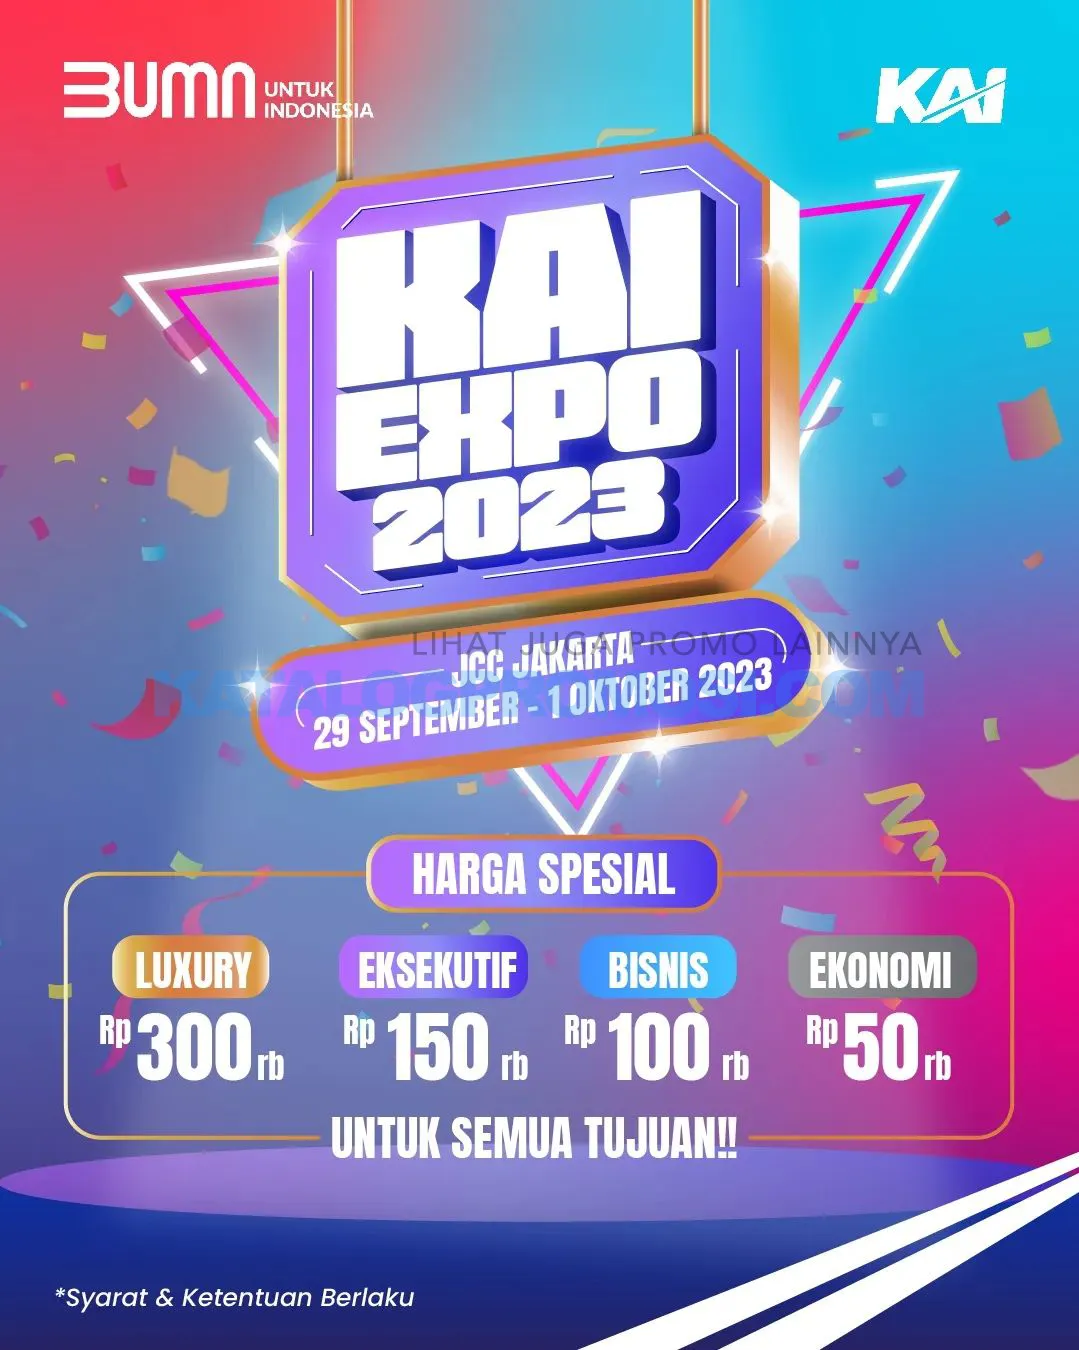 KAI EXPO 2023